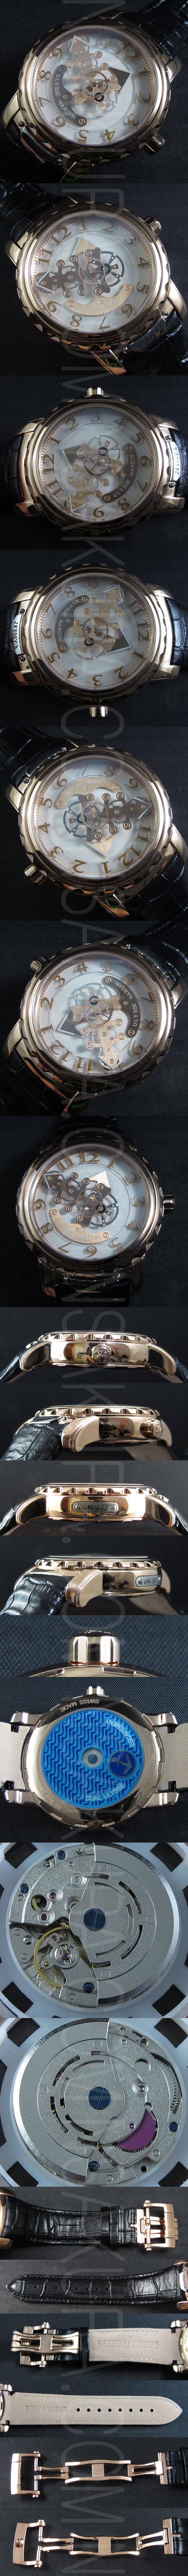 特価腕時計ユリスナルダン(金無垢素材インデックス14Kゴールド)